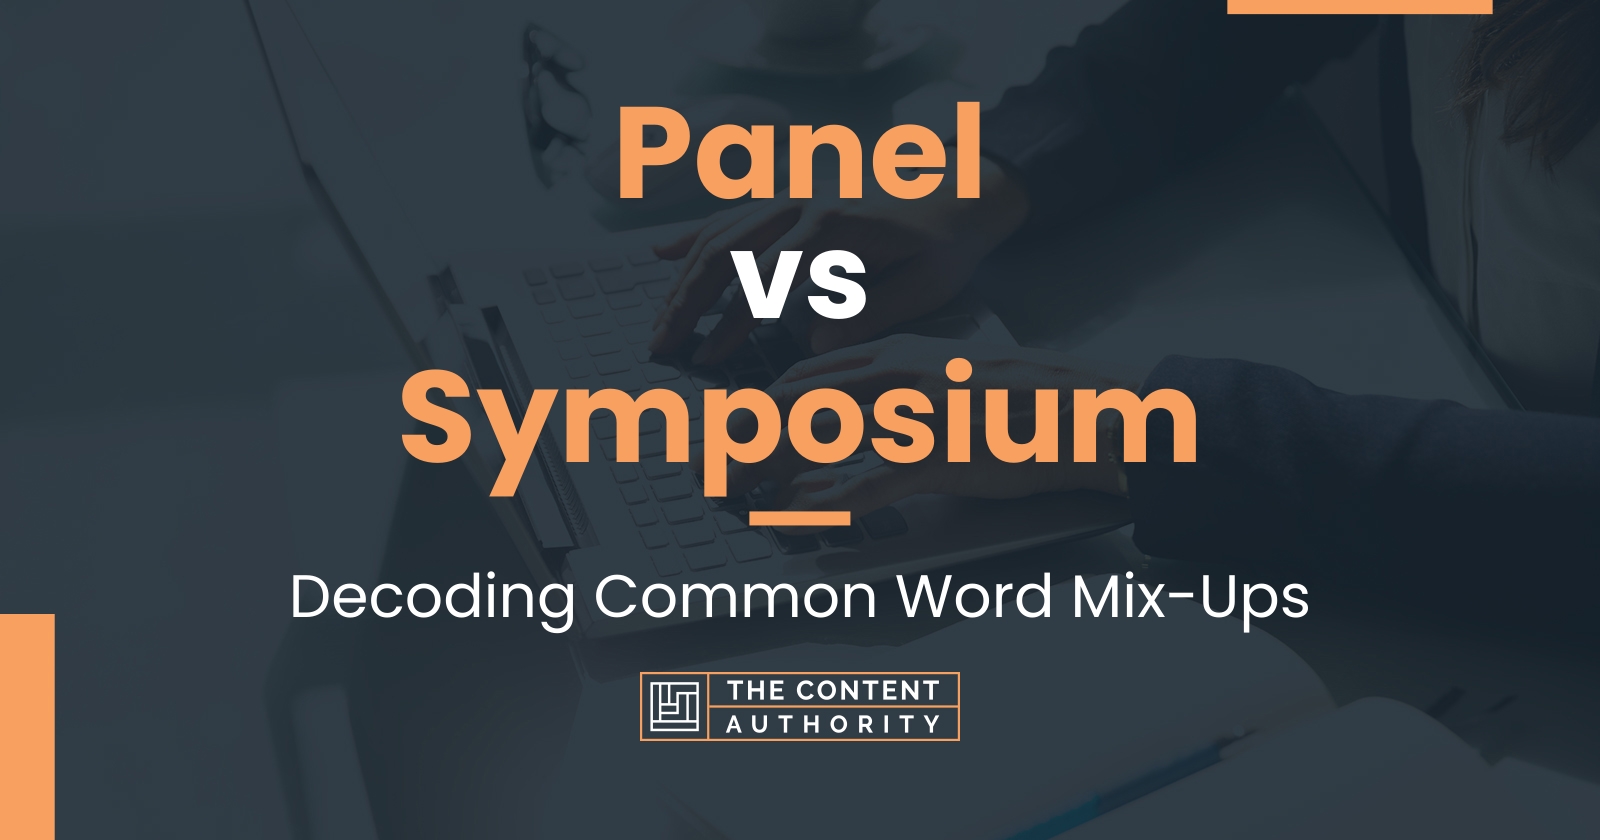 Panel vs Symposium: Decoding Common Word Mix-Ups